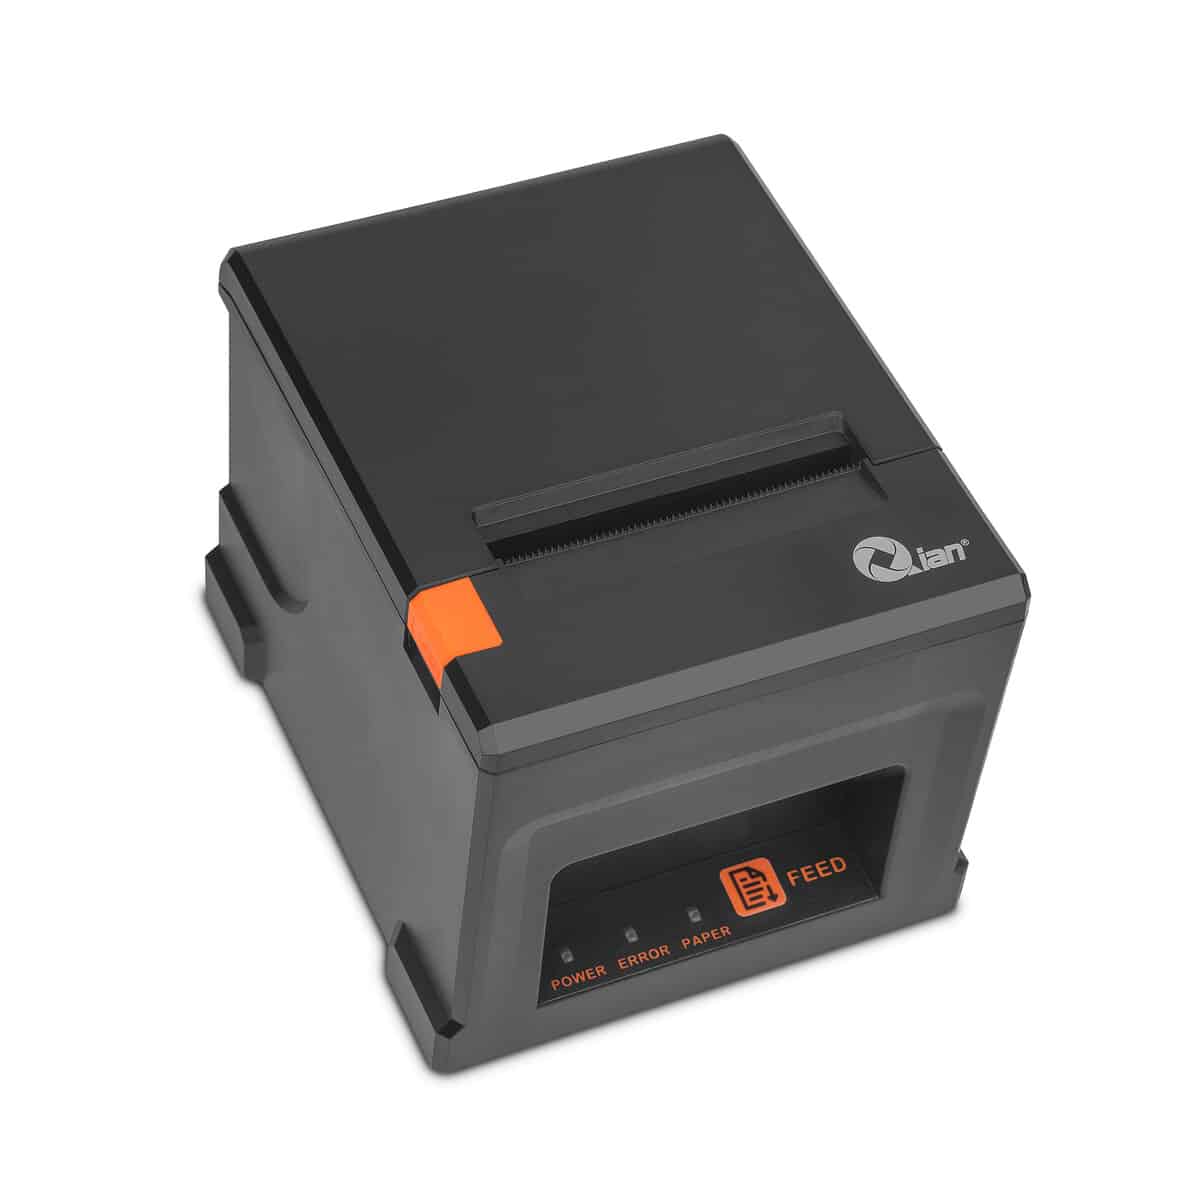 Mini Printer Qian T  rmica 80Mm 220Mm S Usb Lan Cor Aut  Qop T80Ul Ri 02  - QOP-T80UL-RI-02